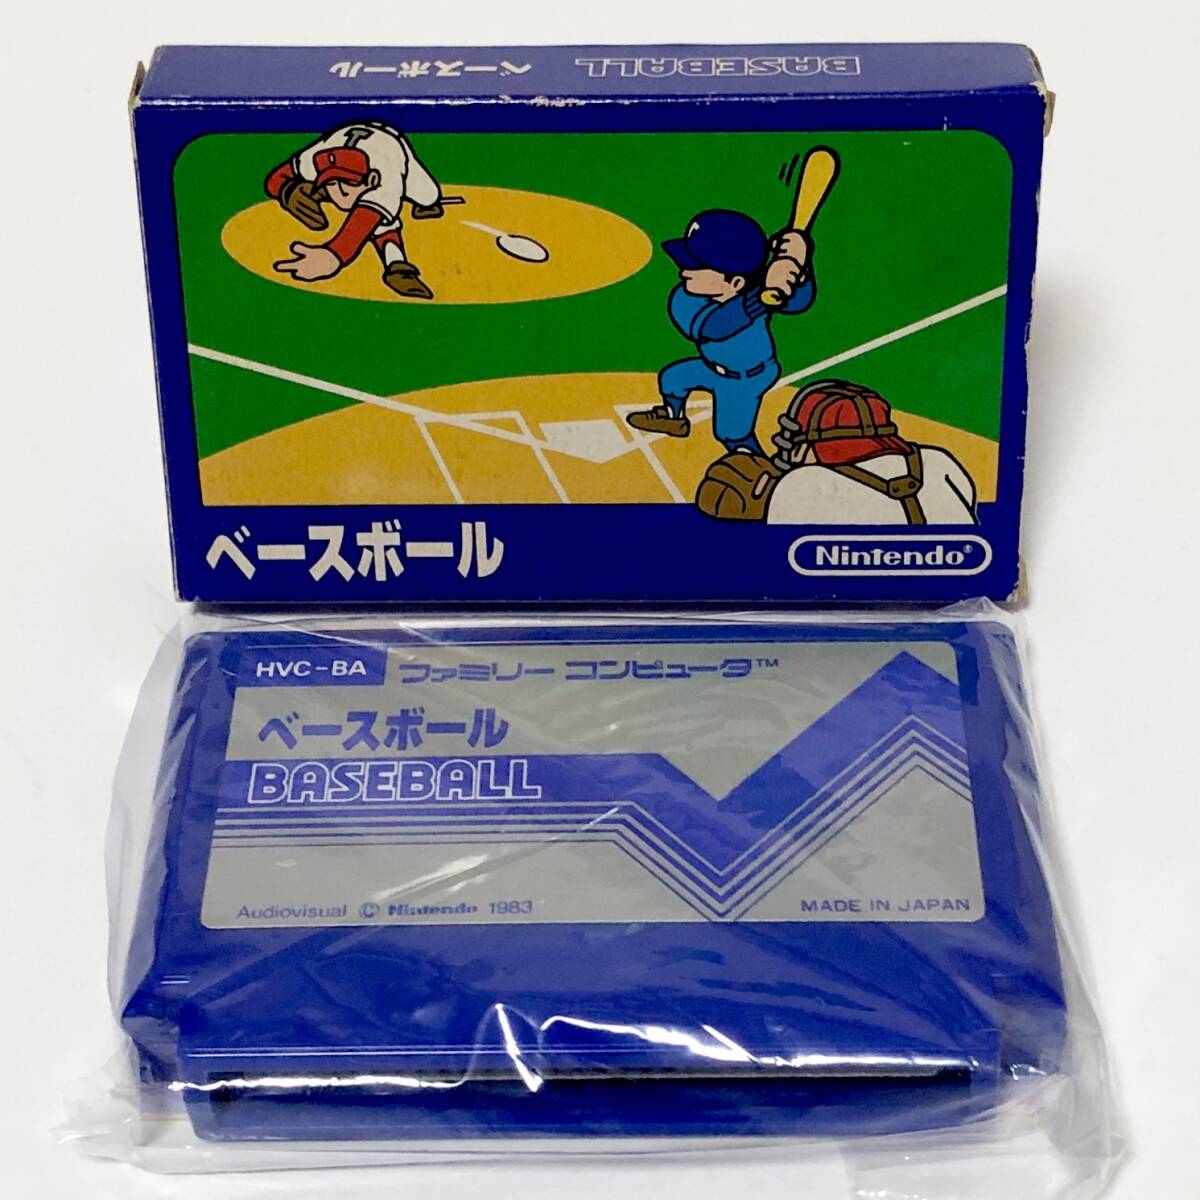 ファミコン ベースボール 小箱版 箱説付き 痛みあり 操作法早見図付き Nintendo Famicom Baseball Small Box Version CIB Tested_画像1